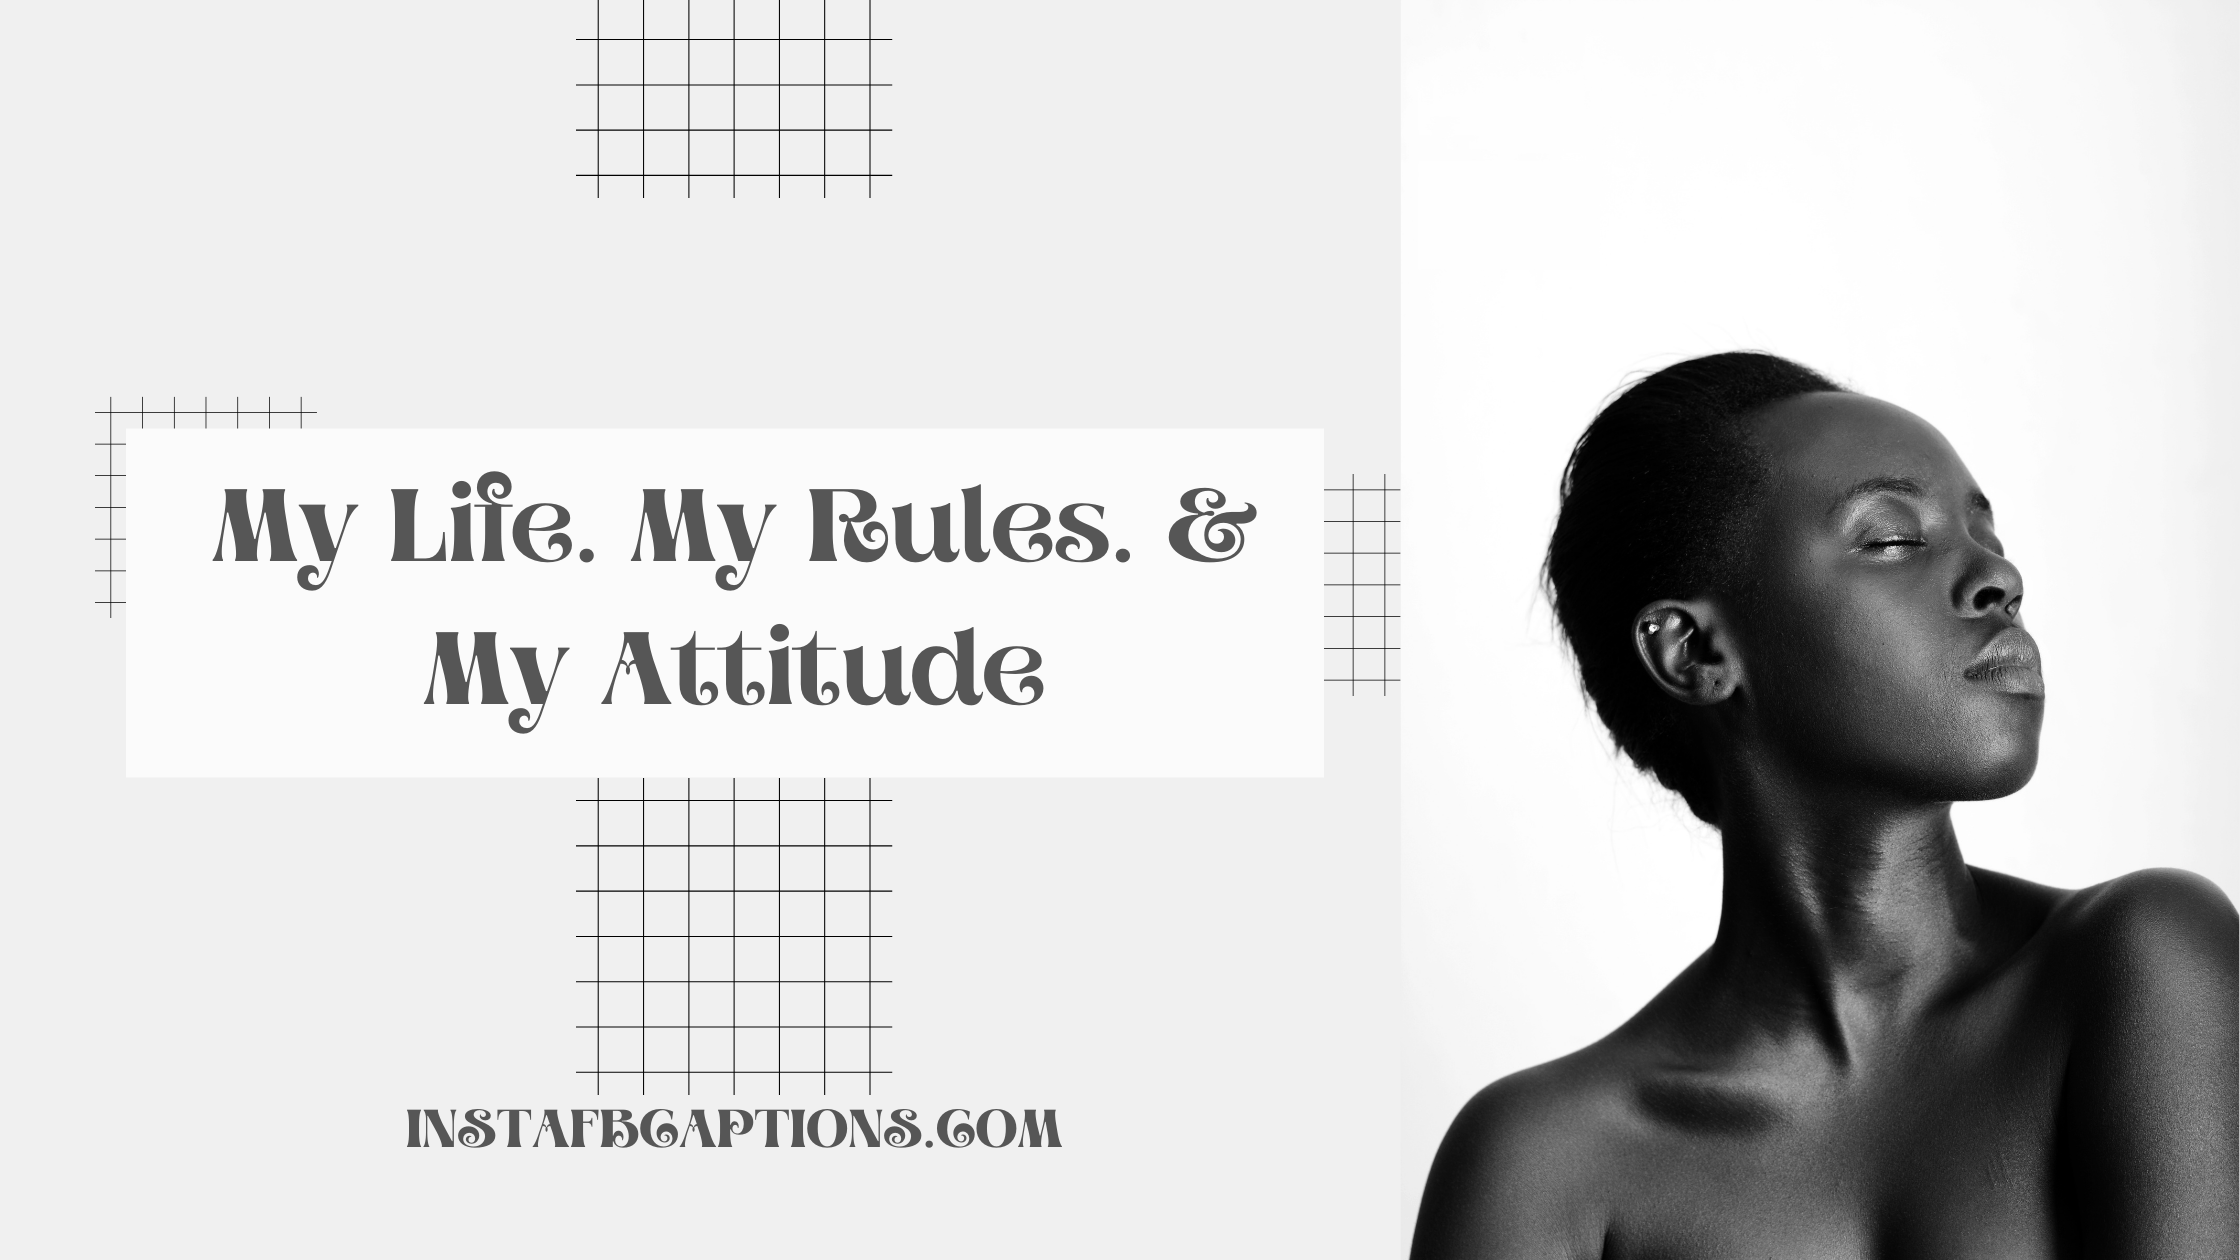 My Life. My Rules. & My Attitude attitude captions for instagram - Attitude captions for girls - 155+ Trending Instagram Attitude Captions For Boys And Girls